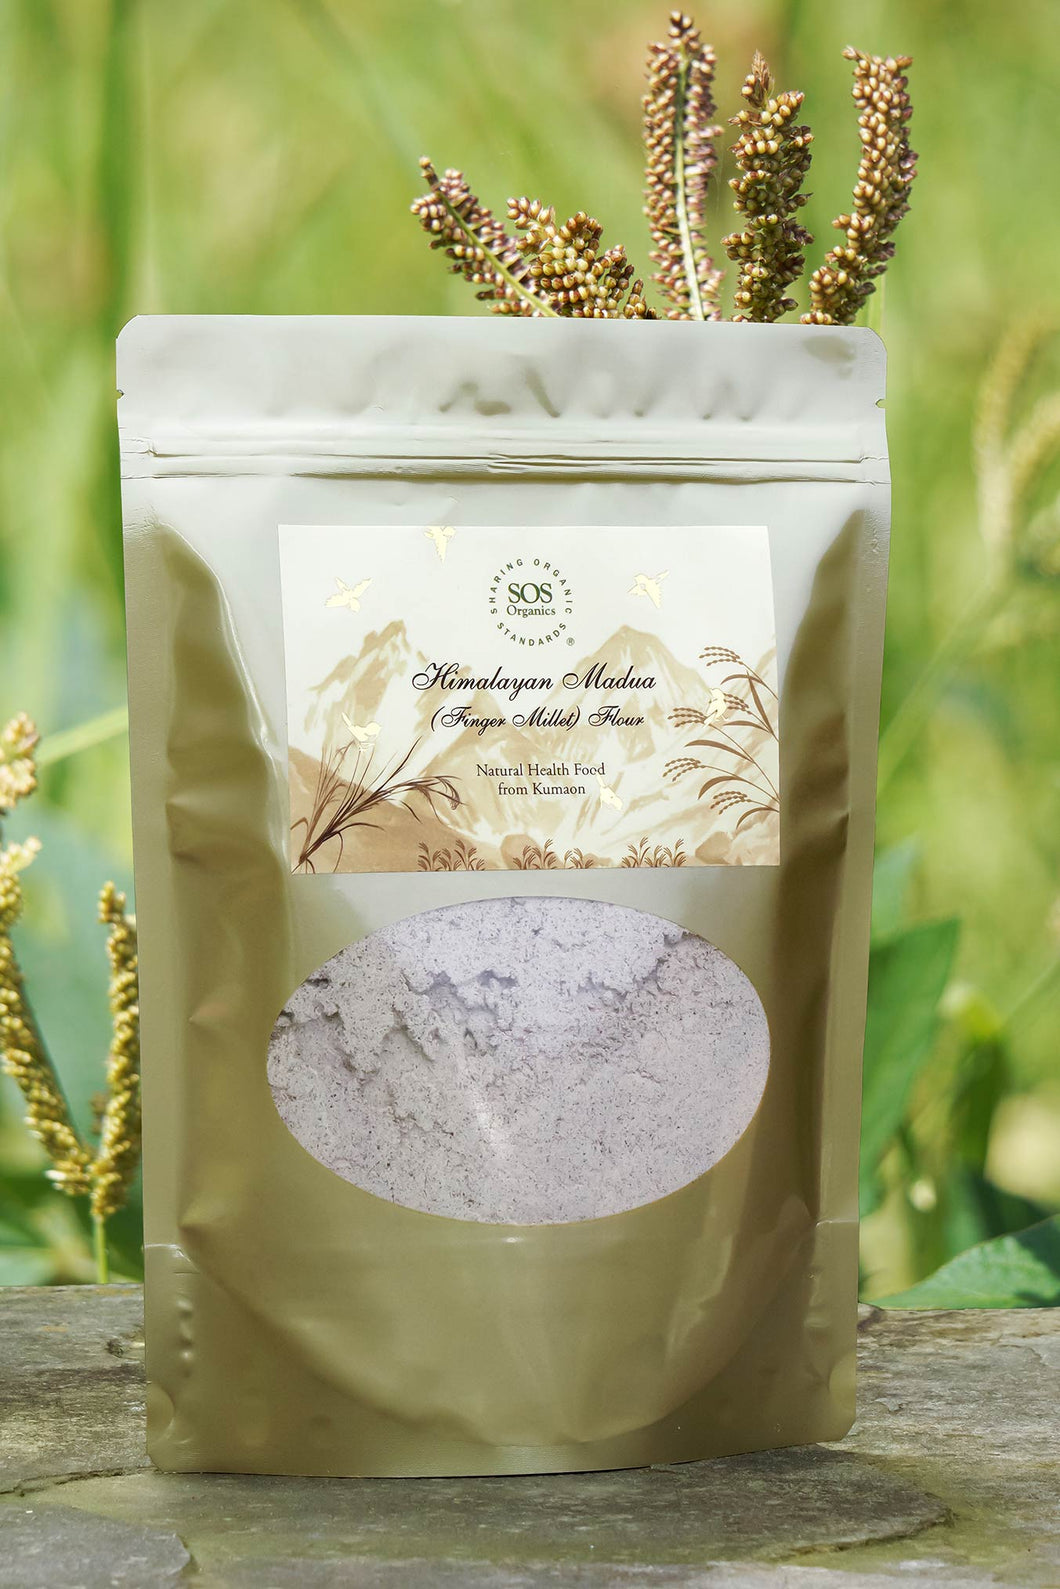 SOS Organics Himalayan Madua (Finger Millet) Flour - Certified Organic